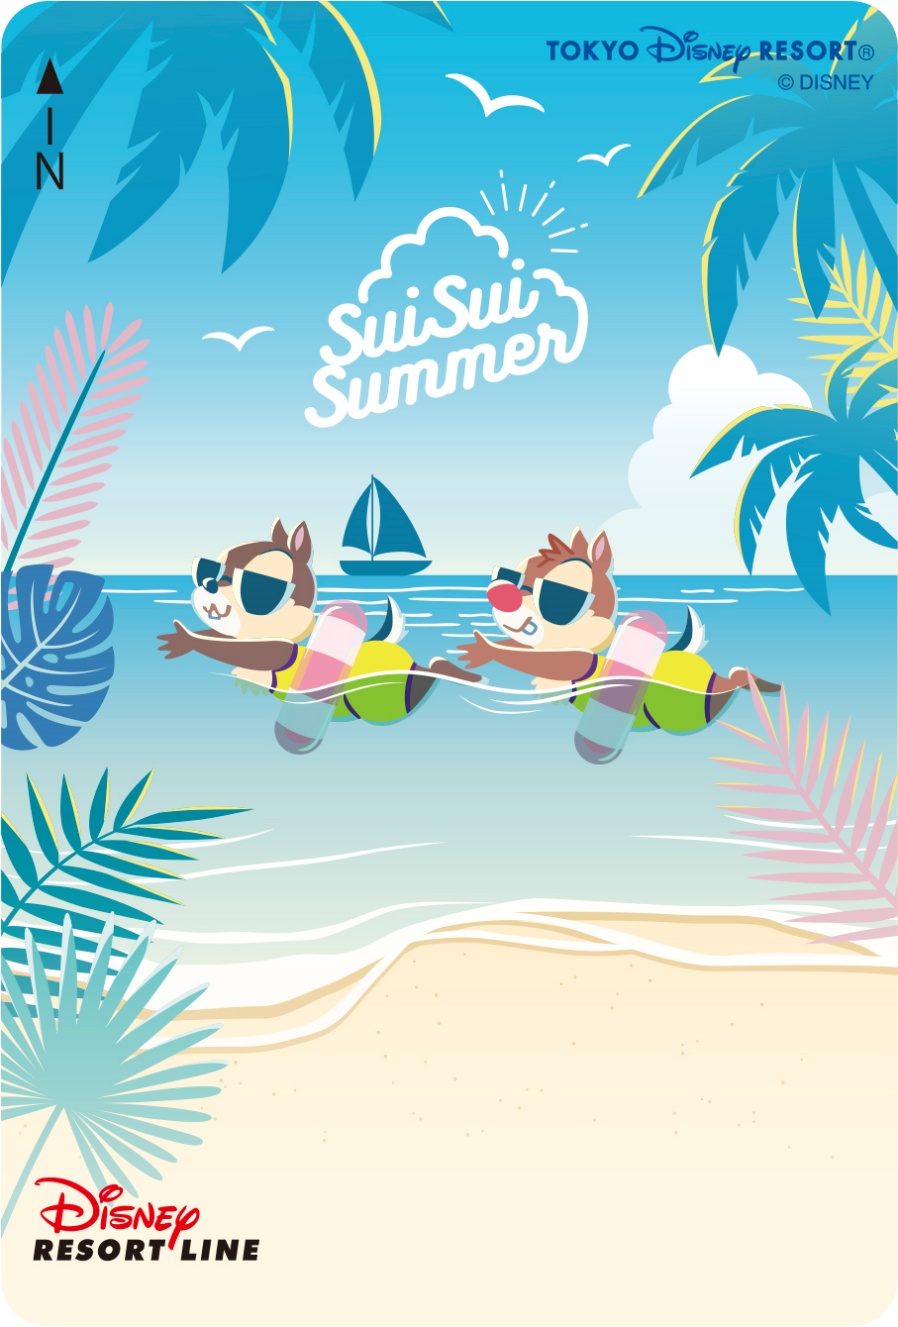 9.「SuiSui Summer」デザインで入場無料